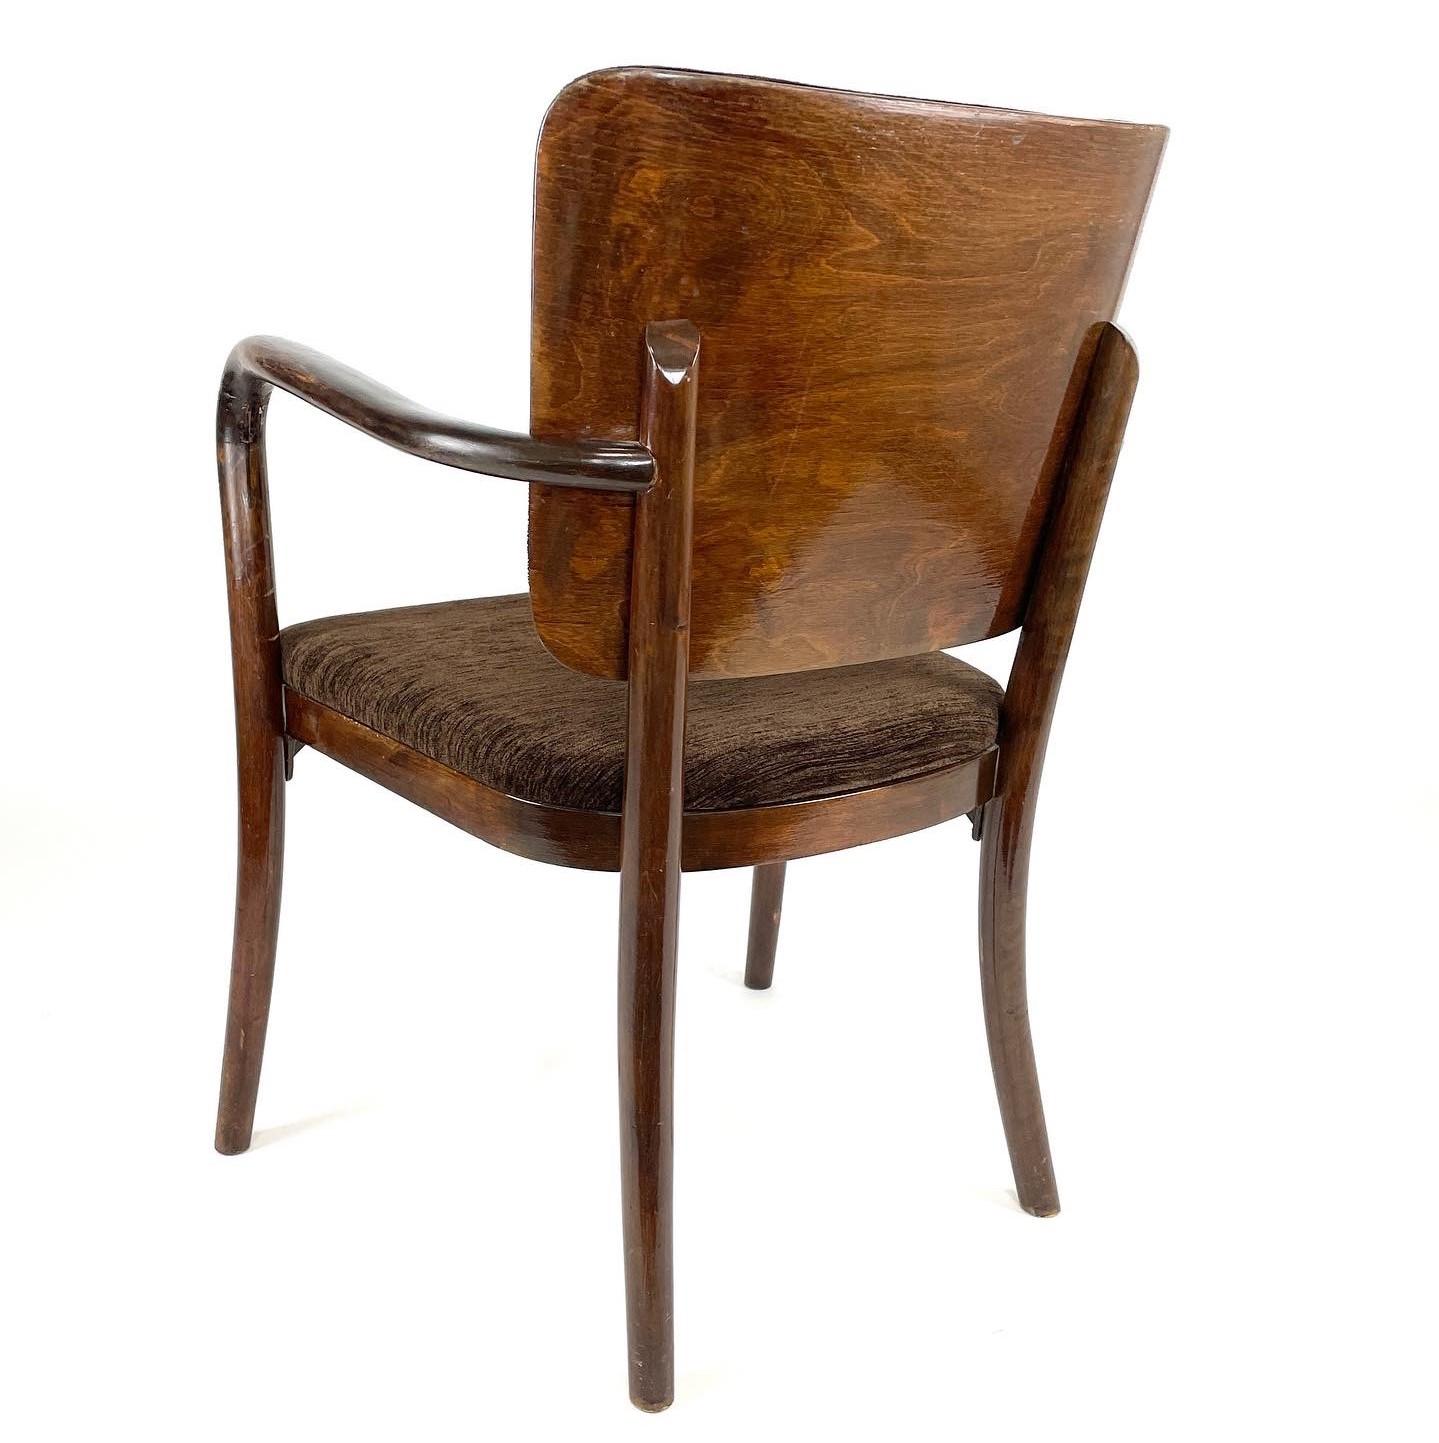 Rehaussez votre décoration intérieure avec cette élégante chaise moderne finlandaise conçue par Alvar Aalto et présentée à l'Exposition universelle de New York en 1939. Fabriqué sous les mains expertes de Wilh Schauman, ce chef-d'œuvre incarne